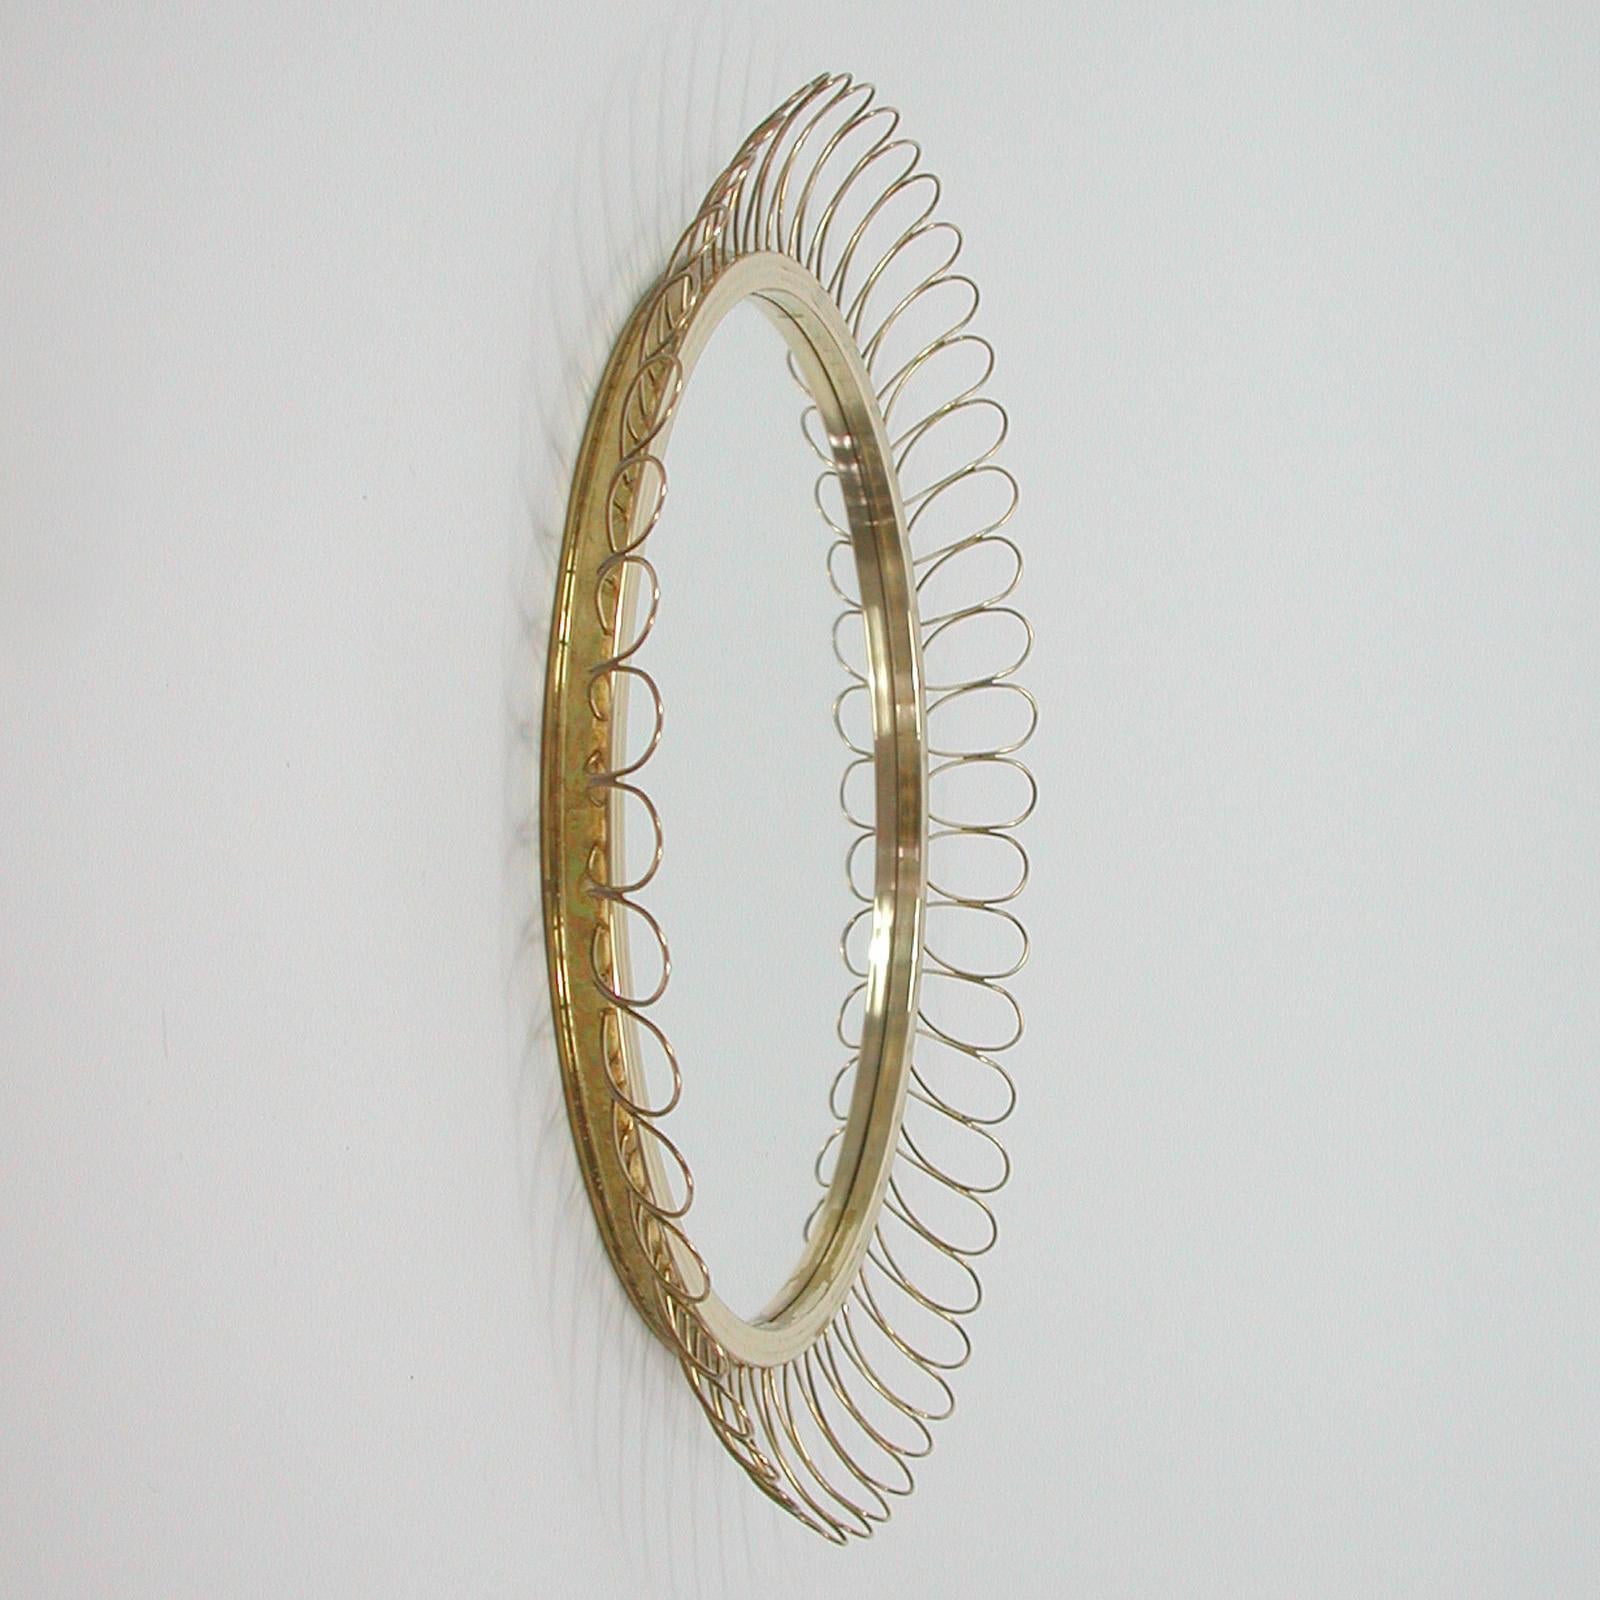 Midcentury Sculptural Round Brass Wall Mirror, Sweden 1950s For Sale 4